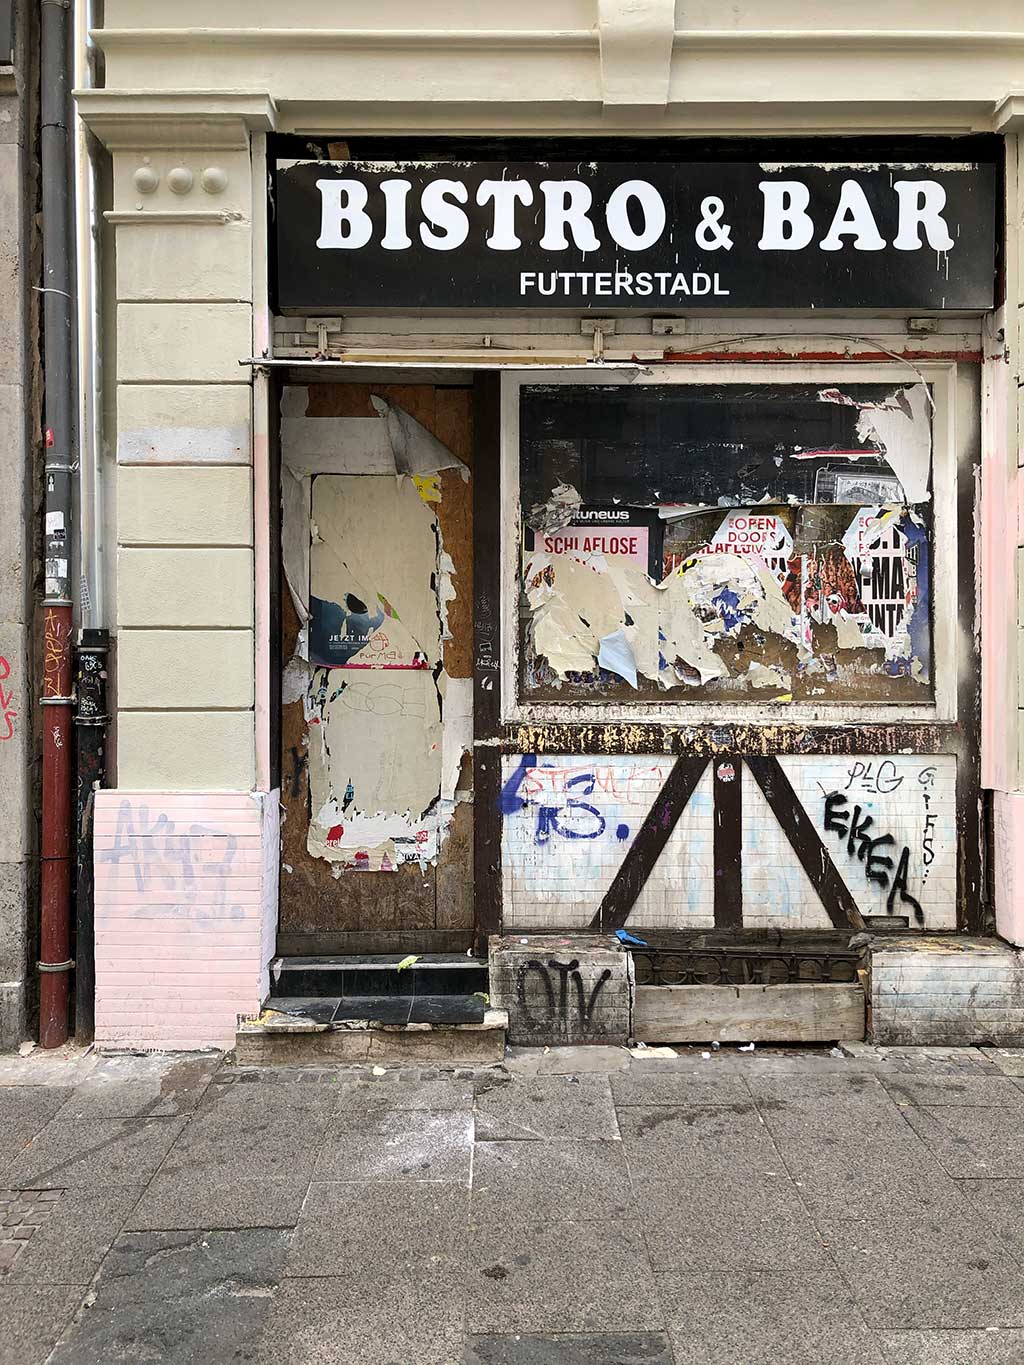 Bistro & Bar Futterstadl im Frankfurter Bahnhofsviertel